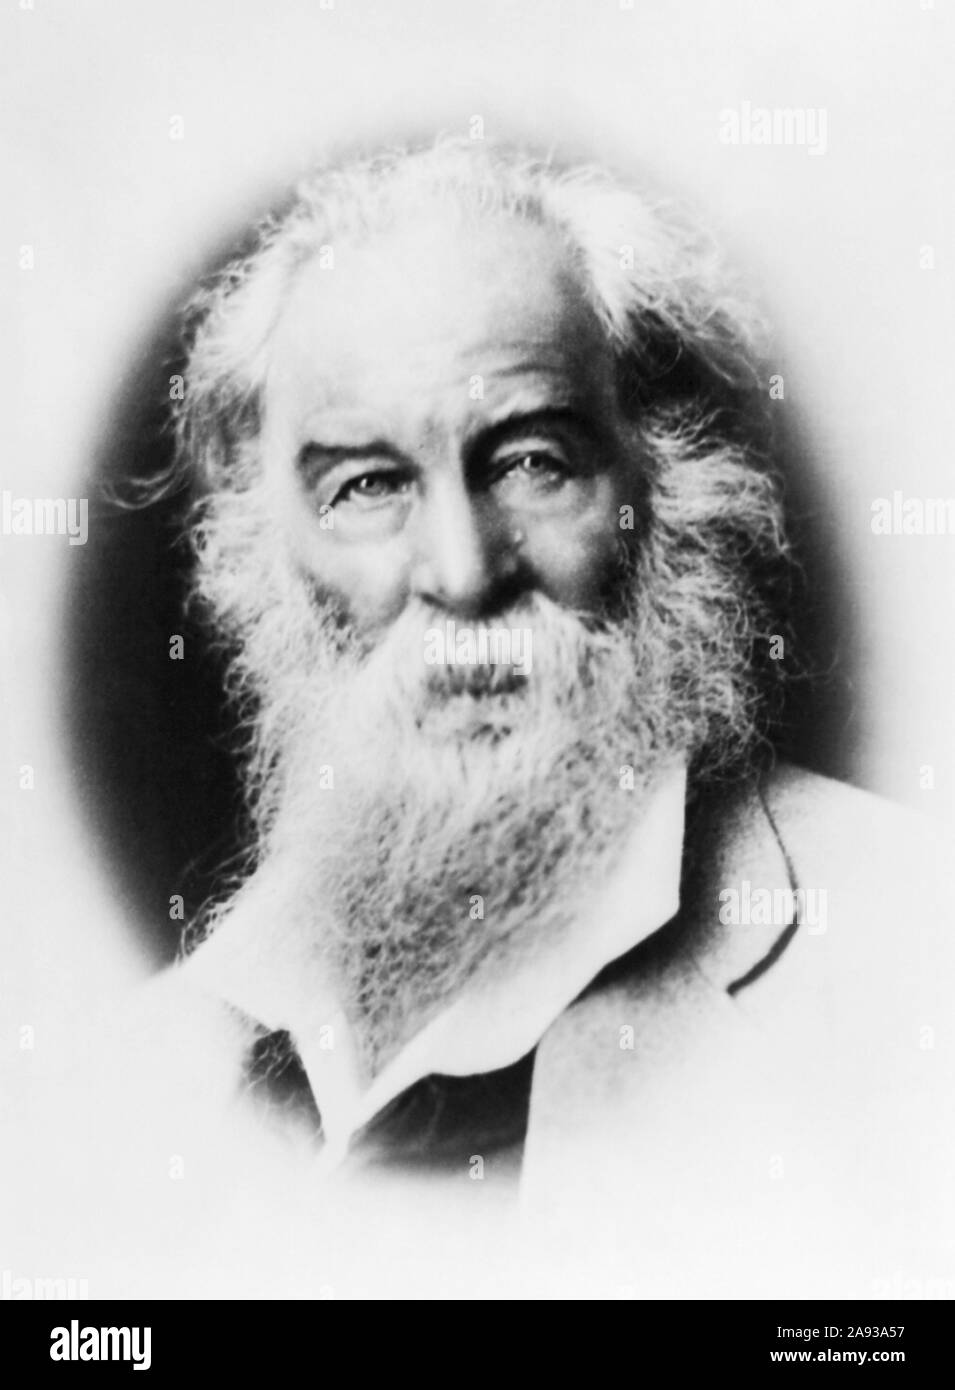 Vintage photo portrait de poète, essayiste et journaliste Walt Whitman (1819 - 1892). Photo vers 1869 par H Goldsmith. Banque D'Images